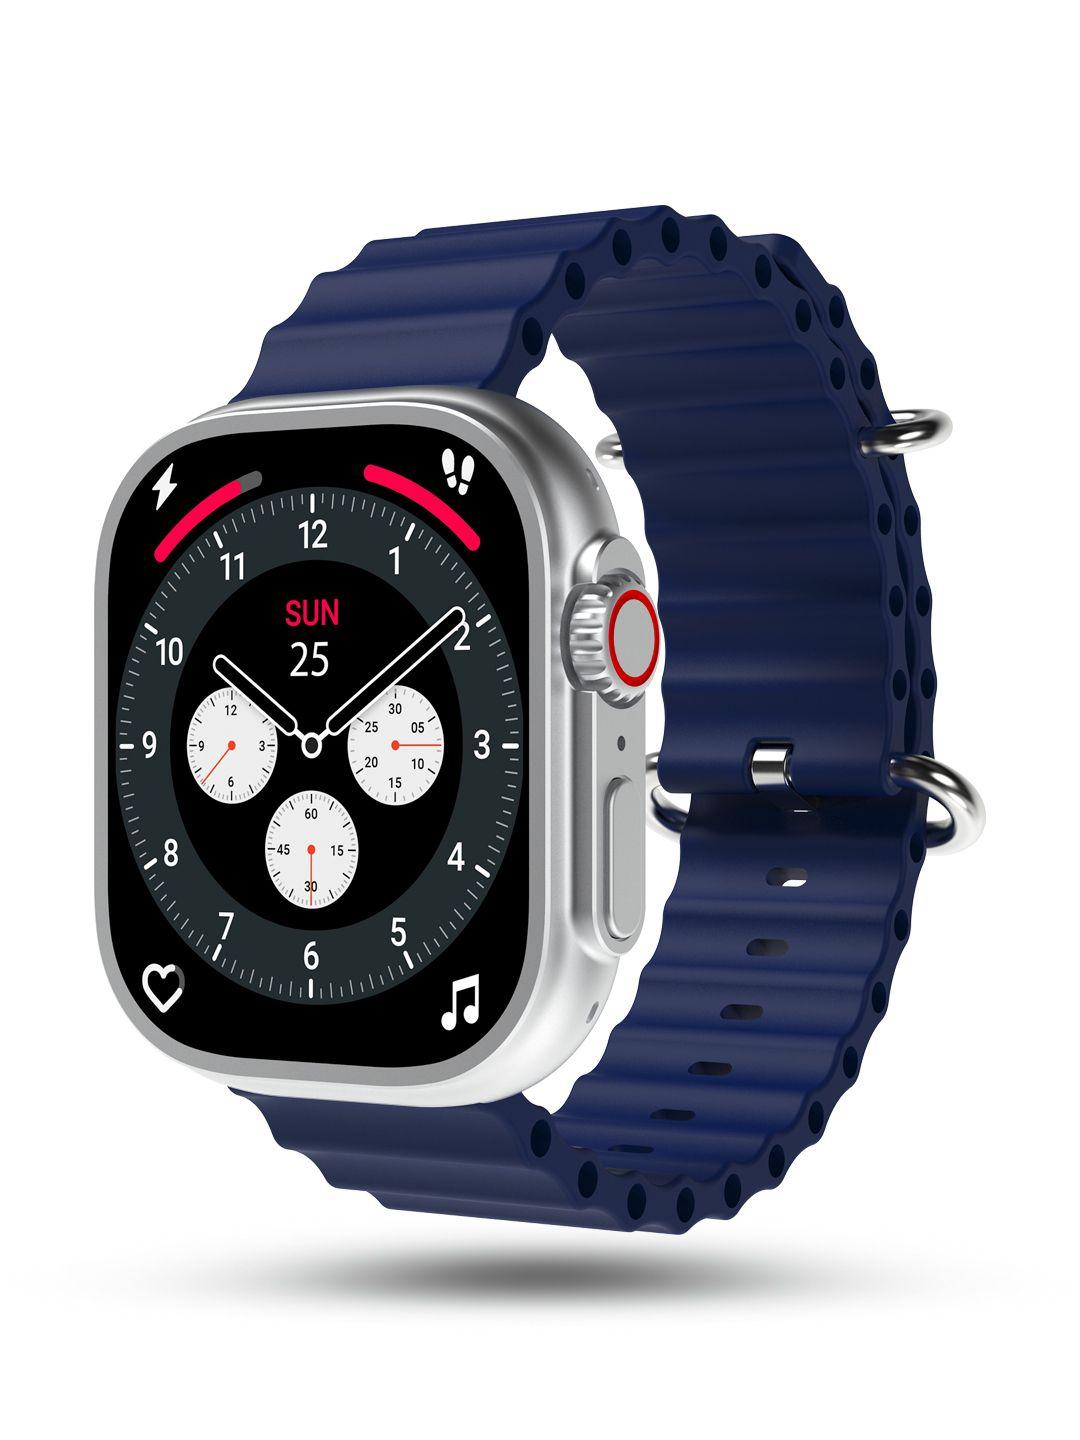 pebble crest 2.02" infinite display bt calling smartwatch